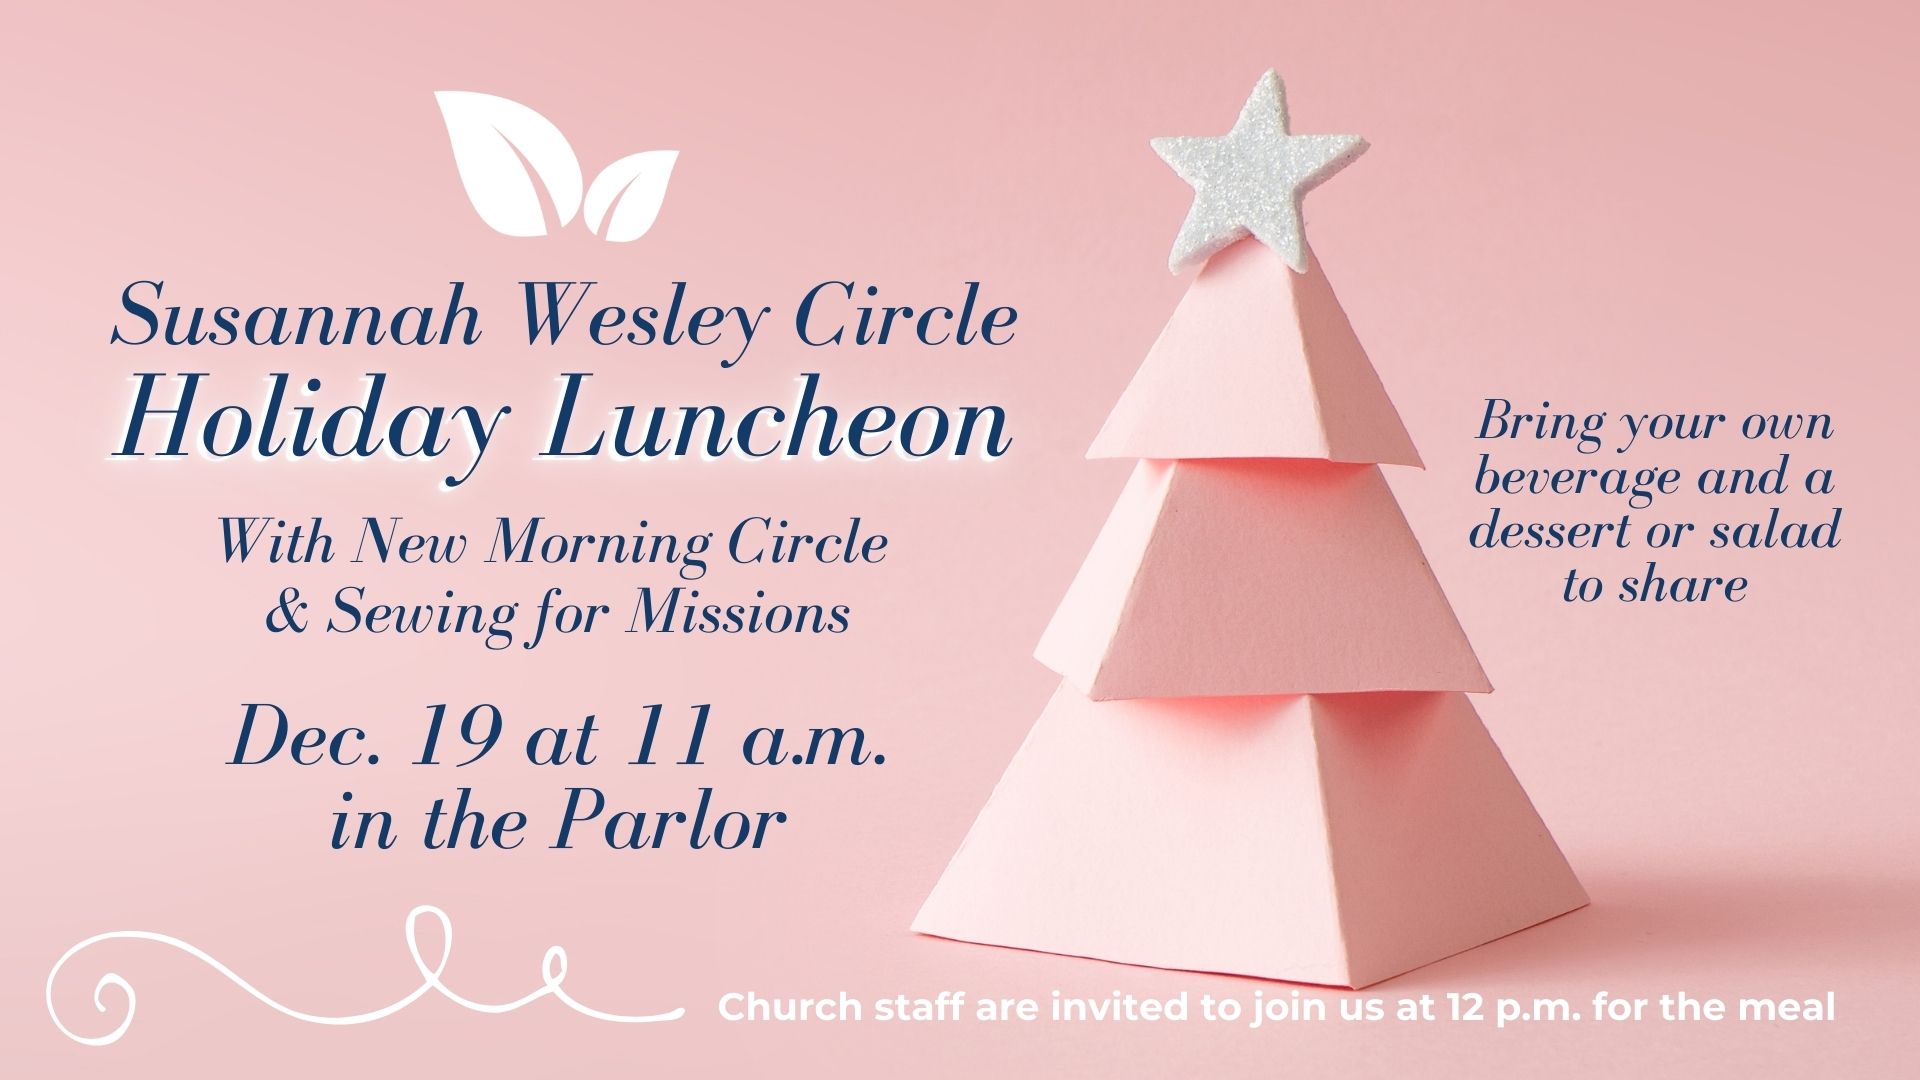 Susannah Wesley Circle Holiday Luncheon